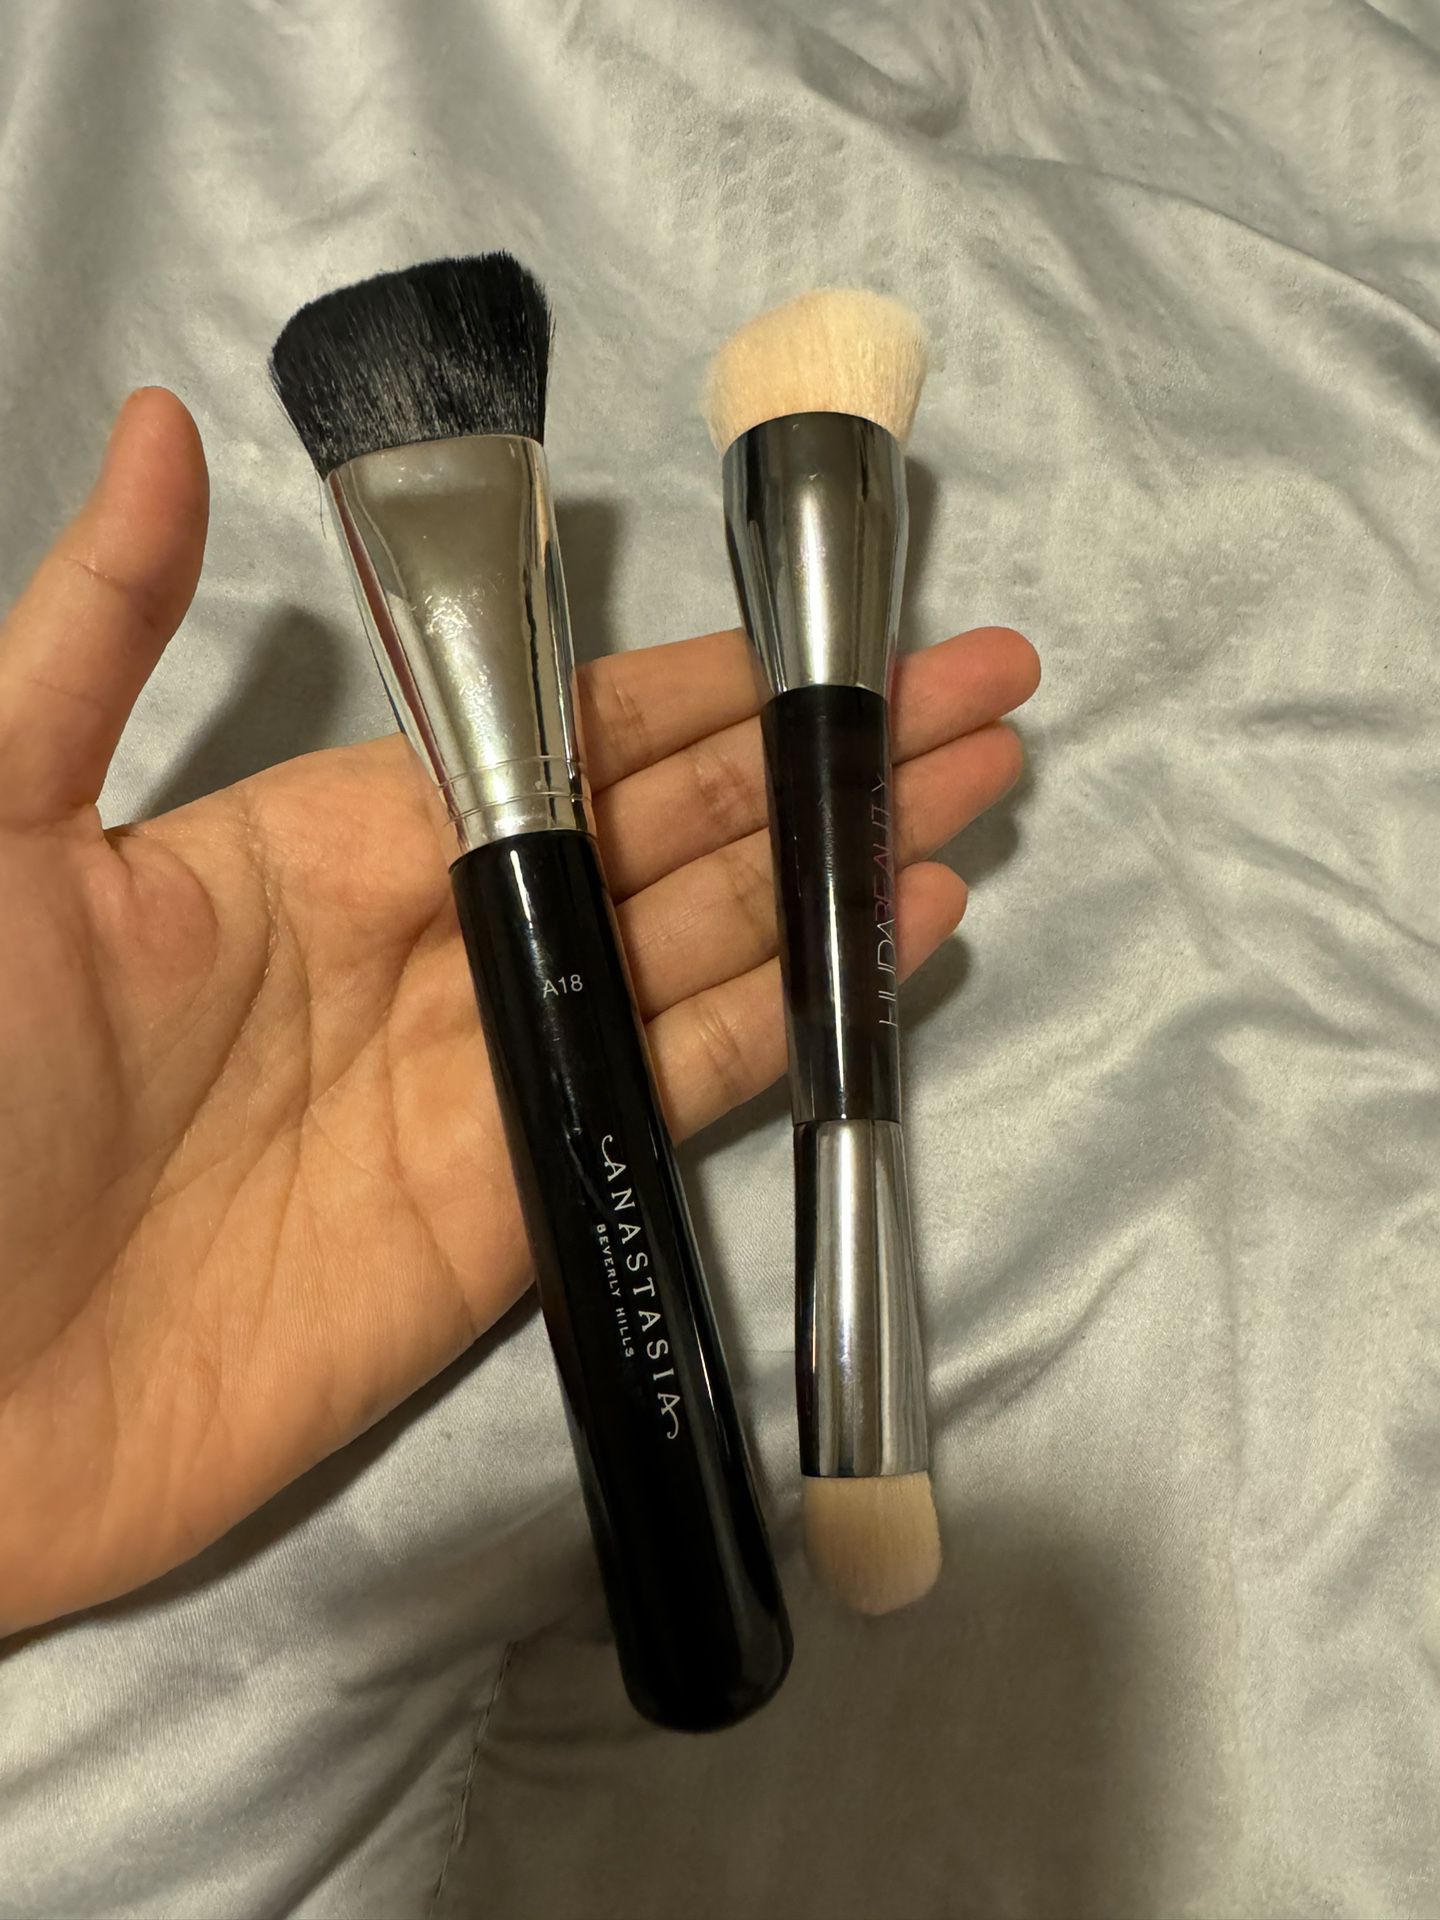 Makeup Brushes (2pcs)